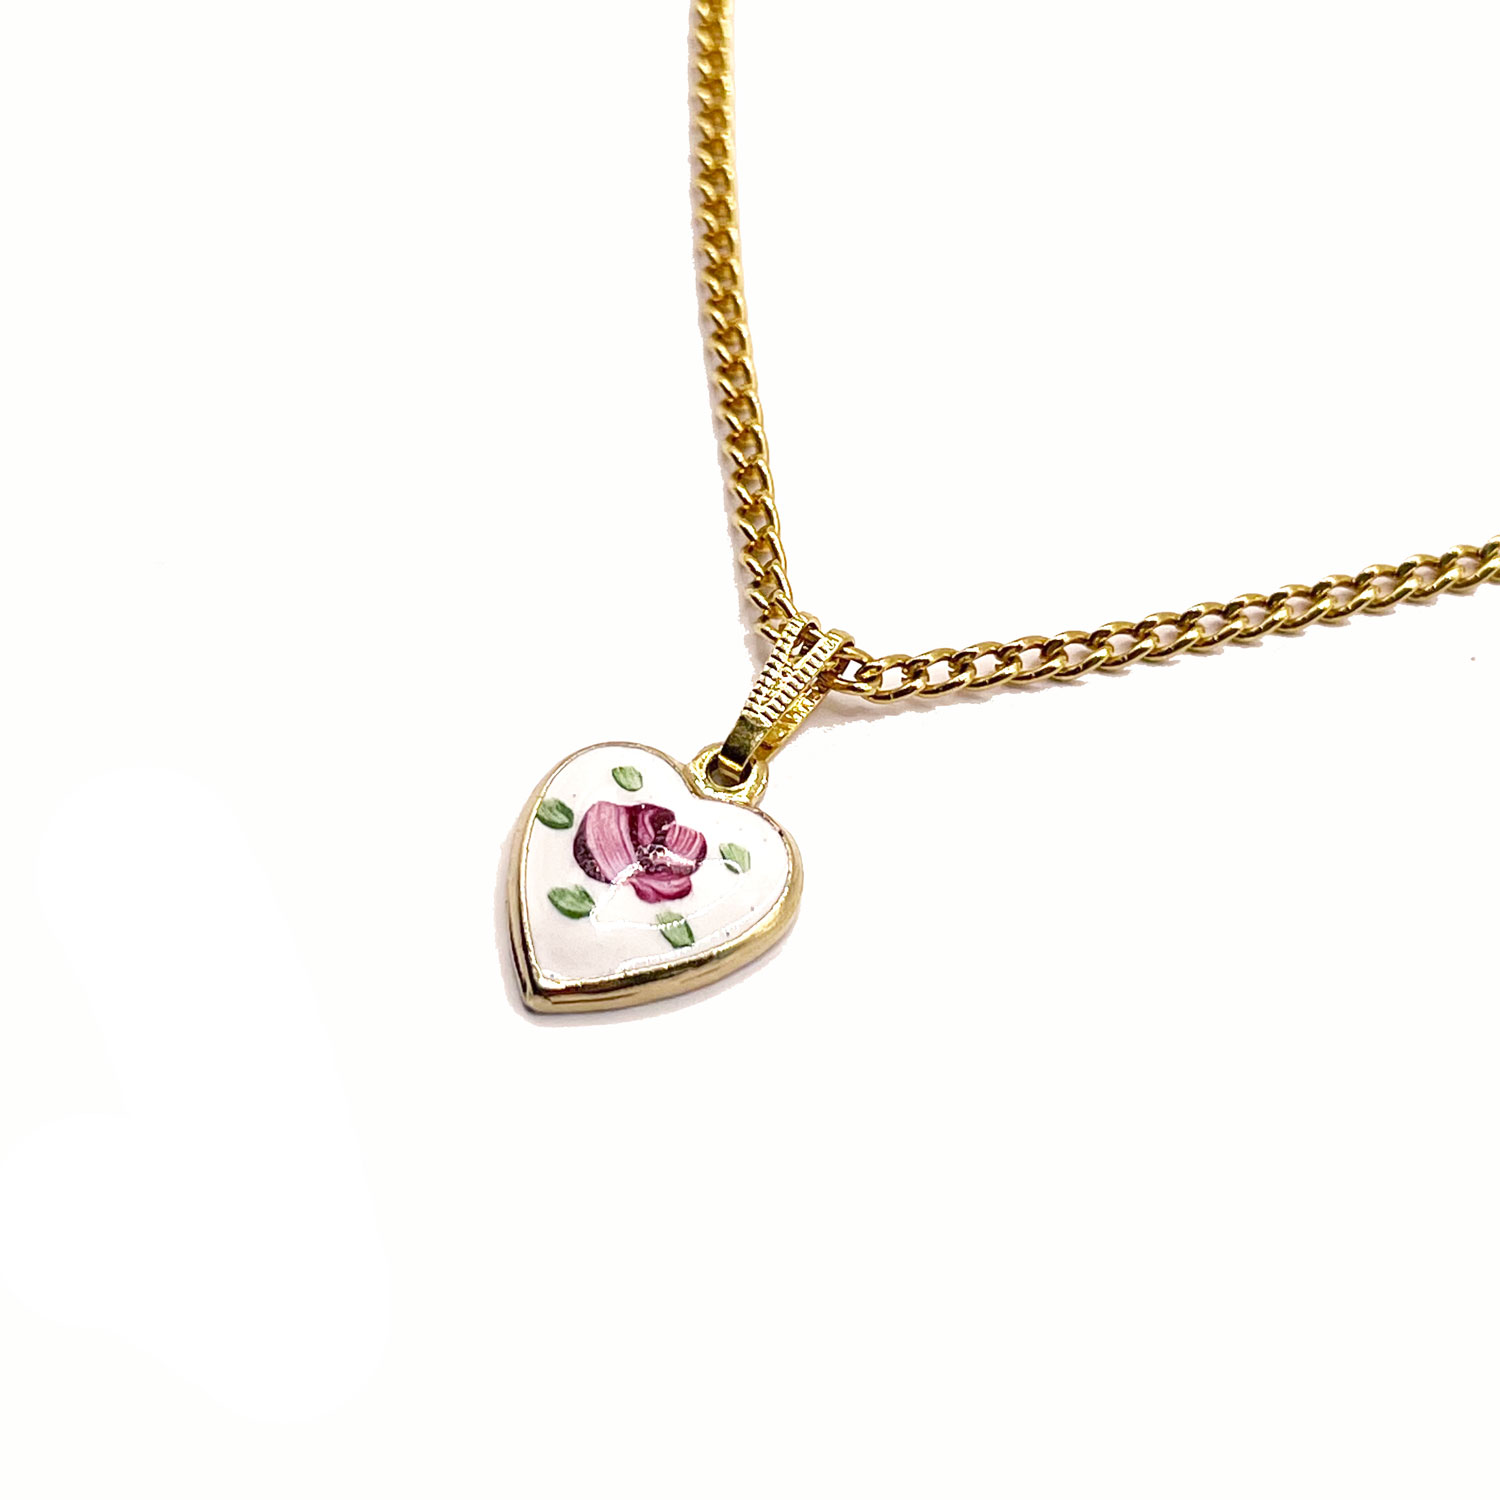 Park Lane enameled heart pendant